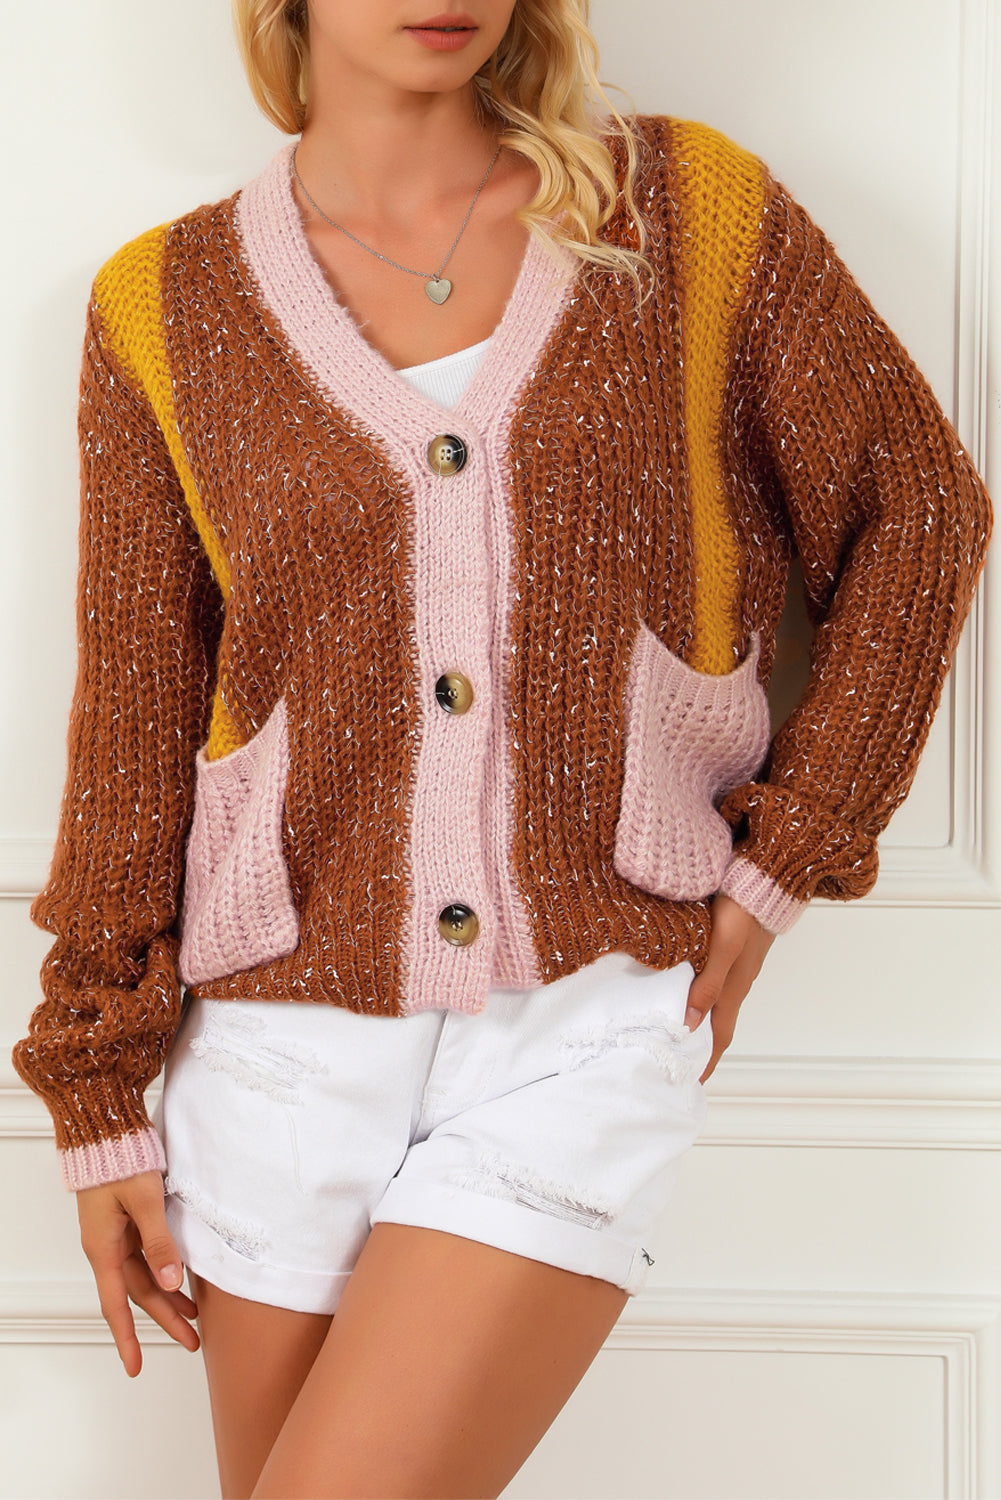 Rjav pulover z dvojnimi žepi in barvnimi bloki